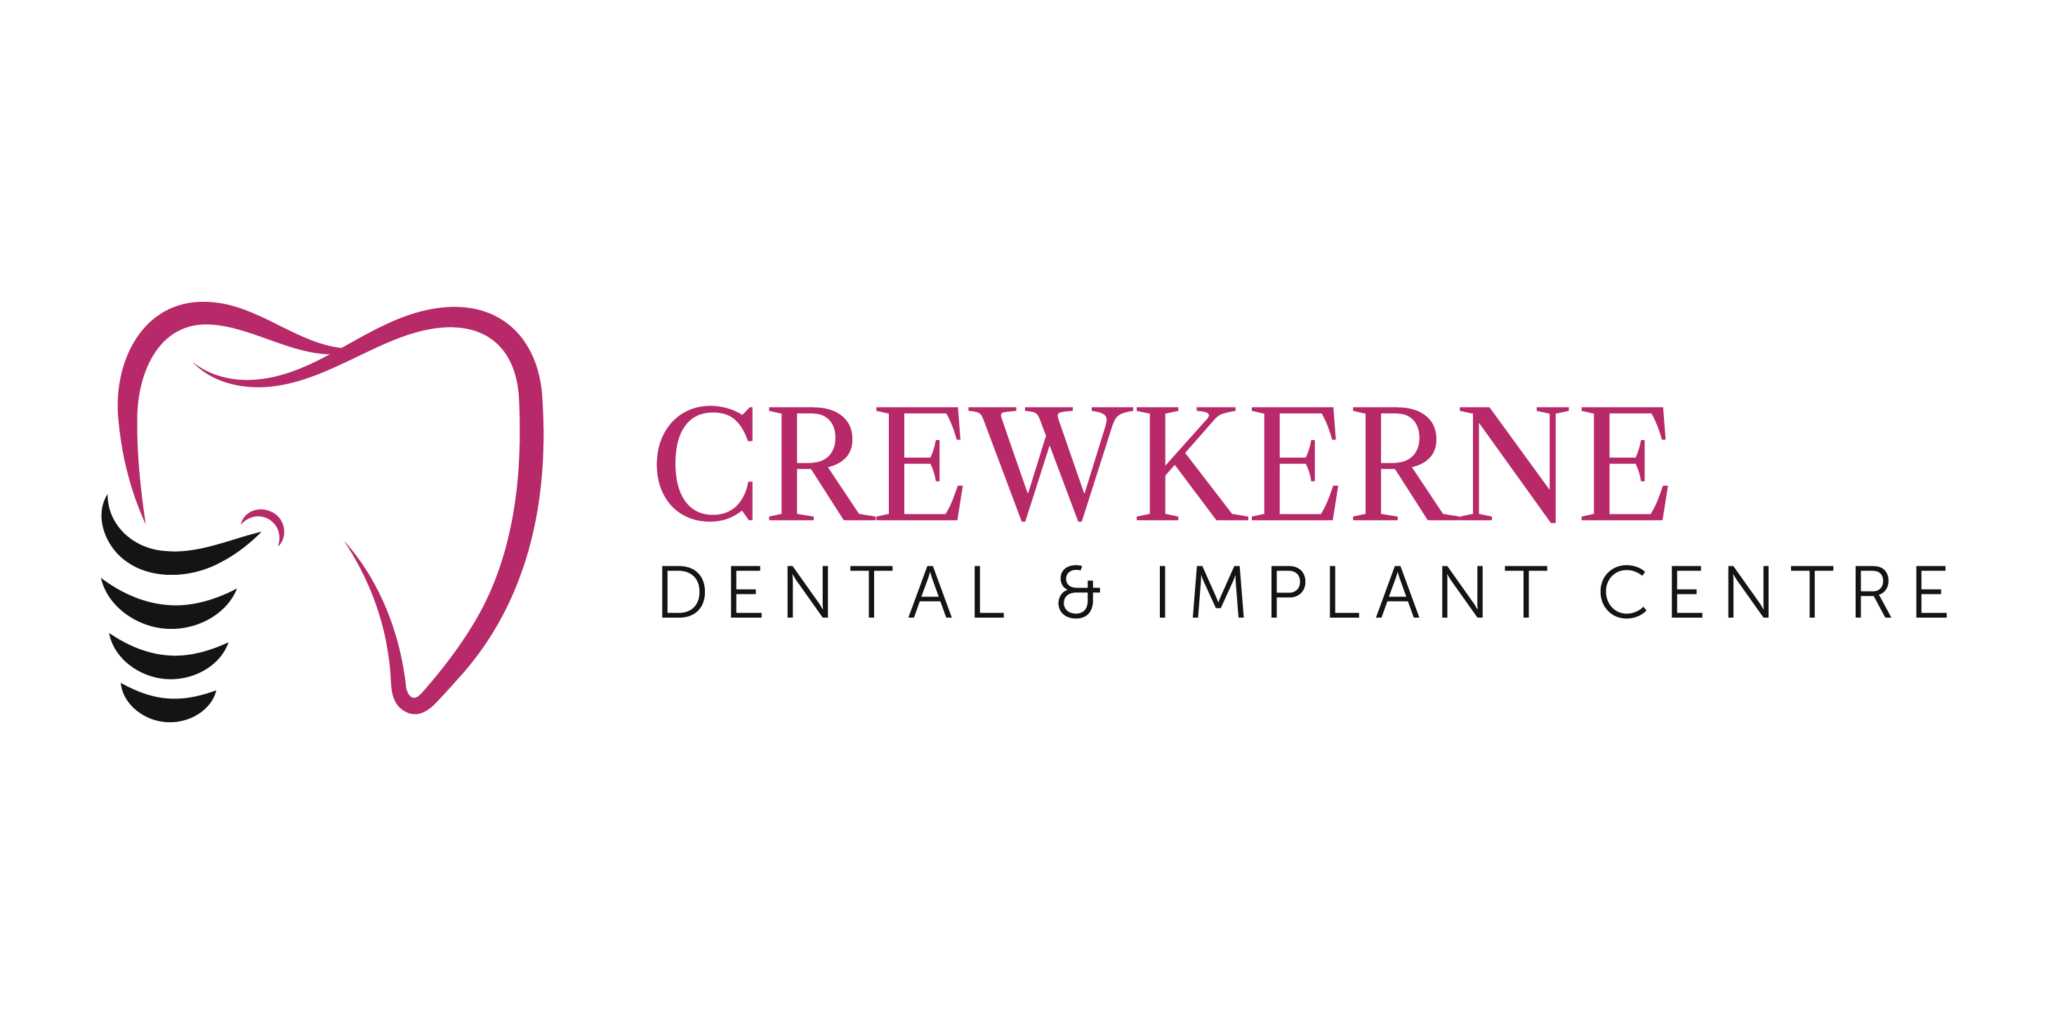 Crewkerne Dental